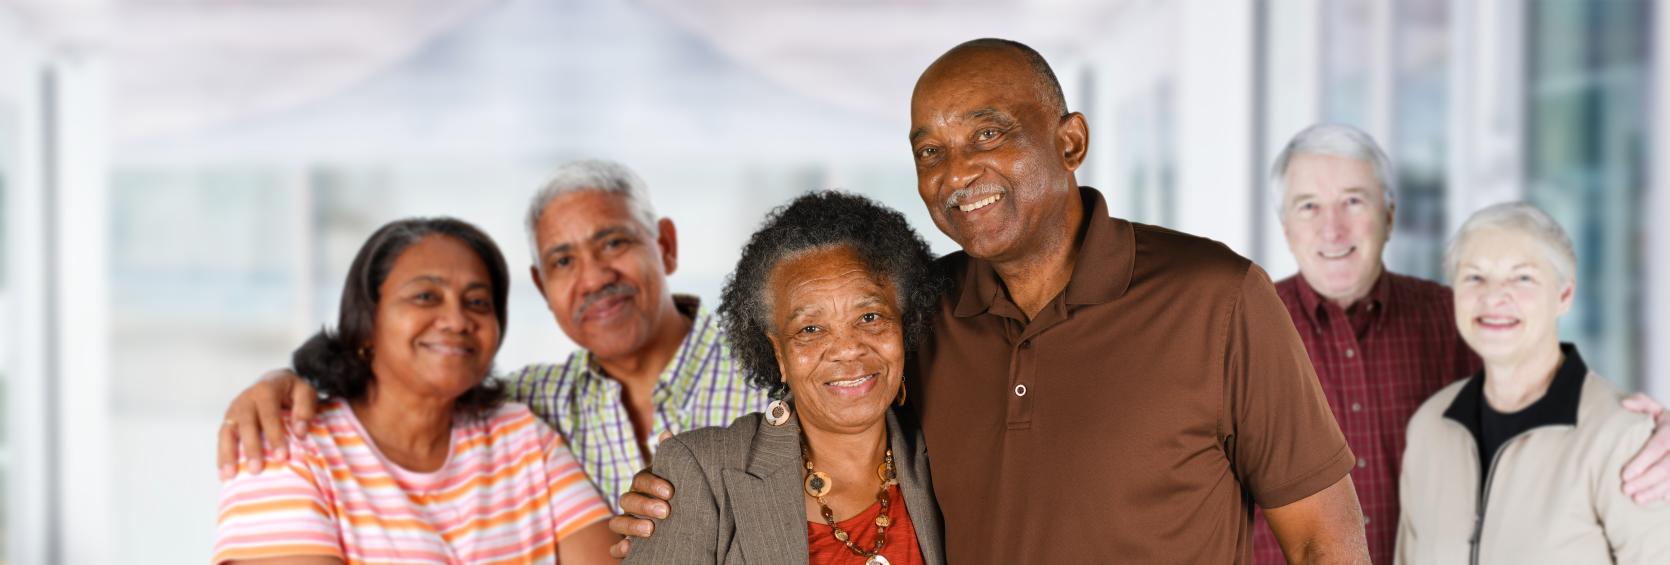 Three smiling elderly couples